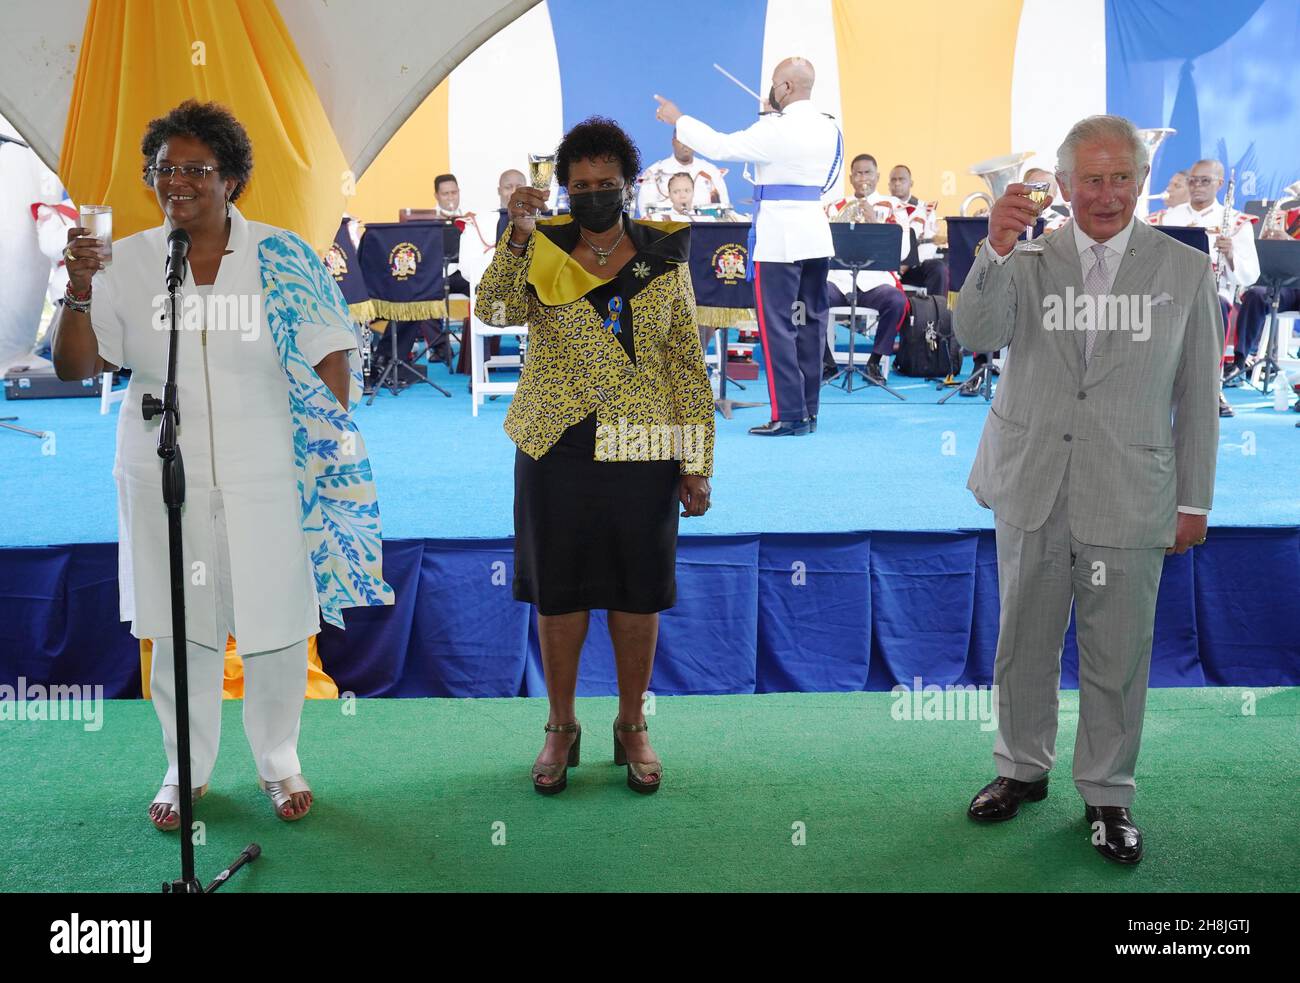 Der Prinz von Wales und die Präsidentin von Barbados, Sandra Mason (Mitte) und die Barbados-Premierministerin Mia Mottley (links), stoßen bei einem Empfang des Präsidenten der Republik im State House in Bridgetown auf die Nation an. Barbados nach einer Zeremonie anlässlich des Übergangs des Landes zu einer republik innerhalb des Commonwealth. Bilddatum: Dienstag, 30. November 2021. Stockfoto